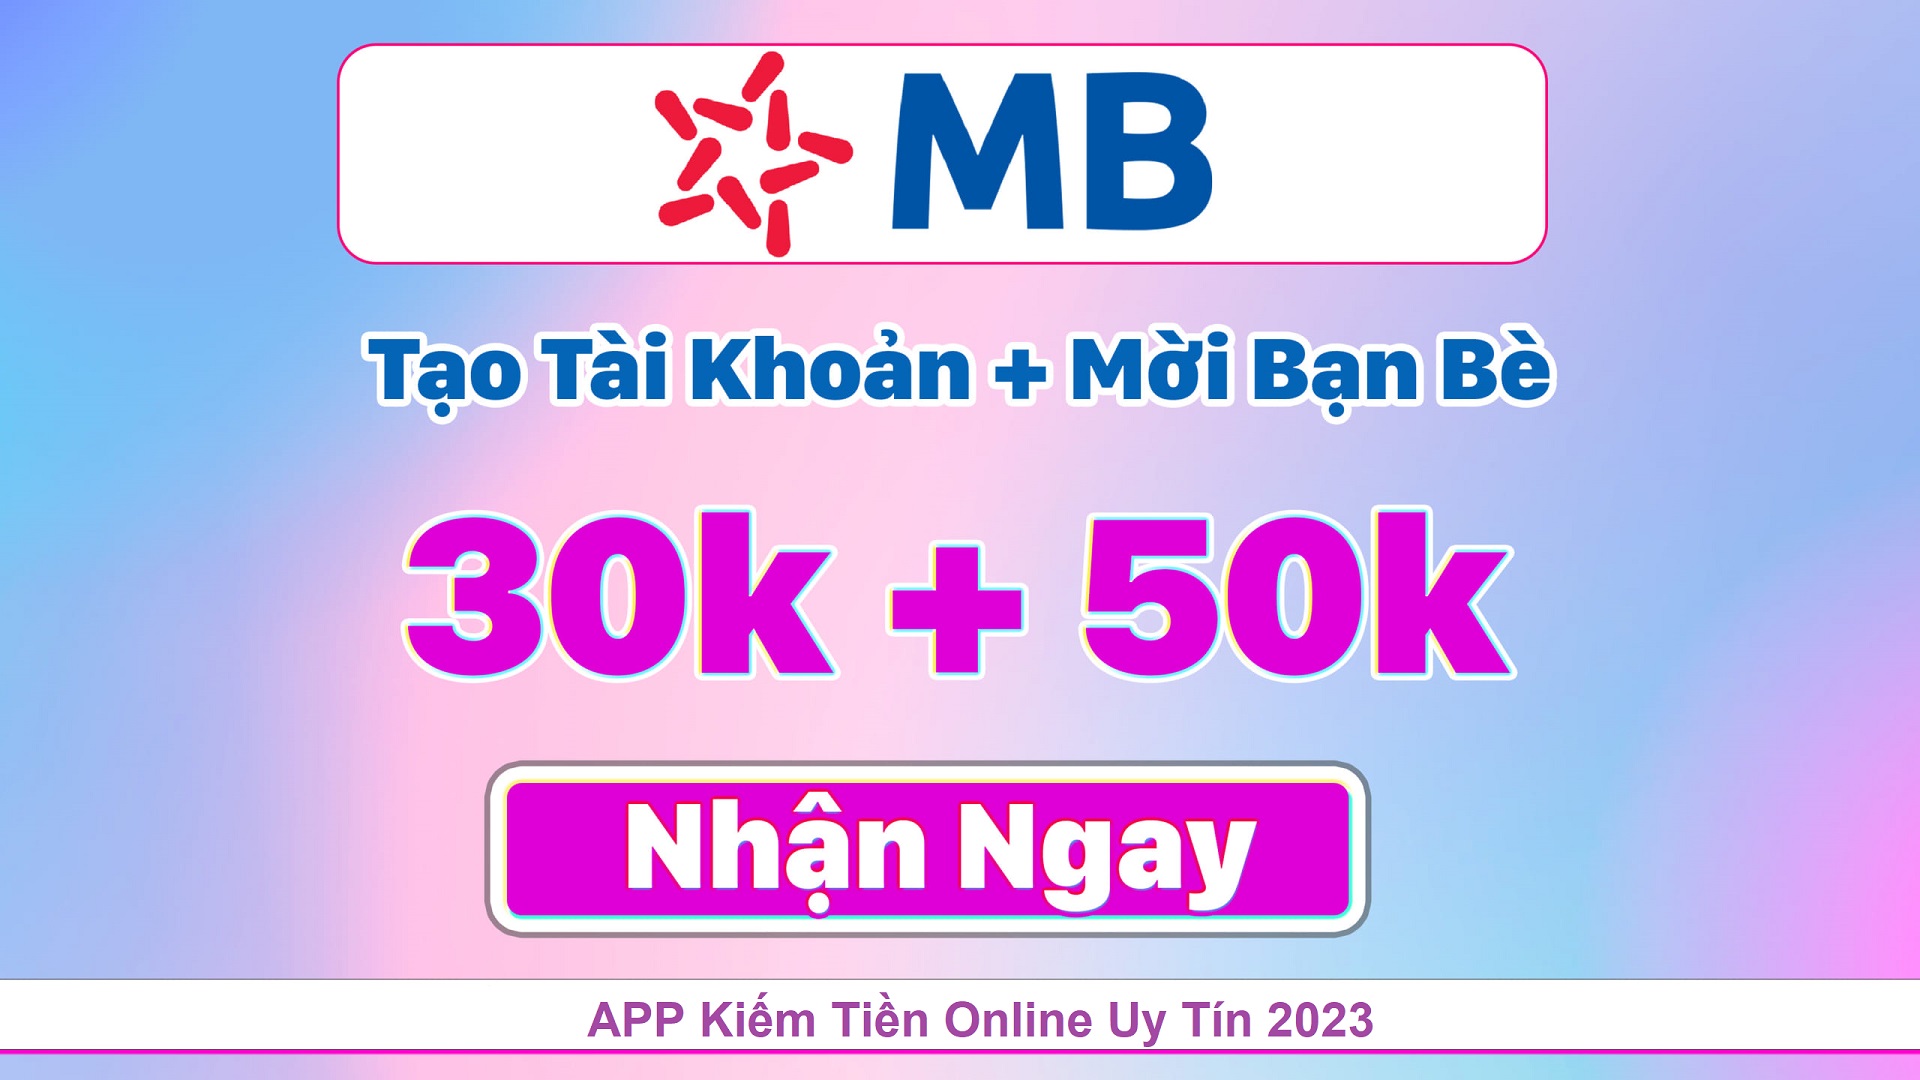 App kiếm tiền online – MB Bank